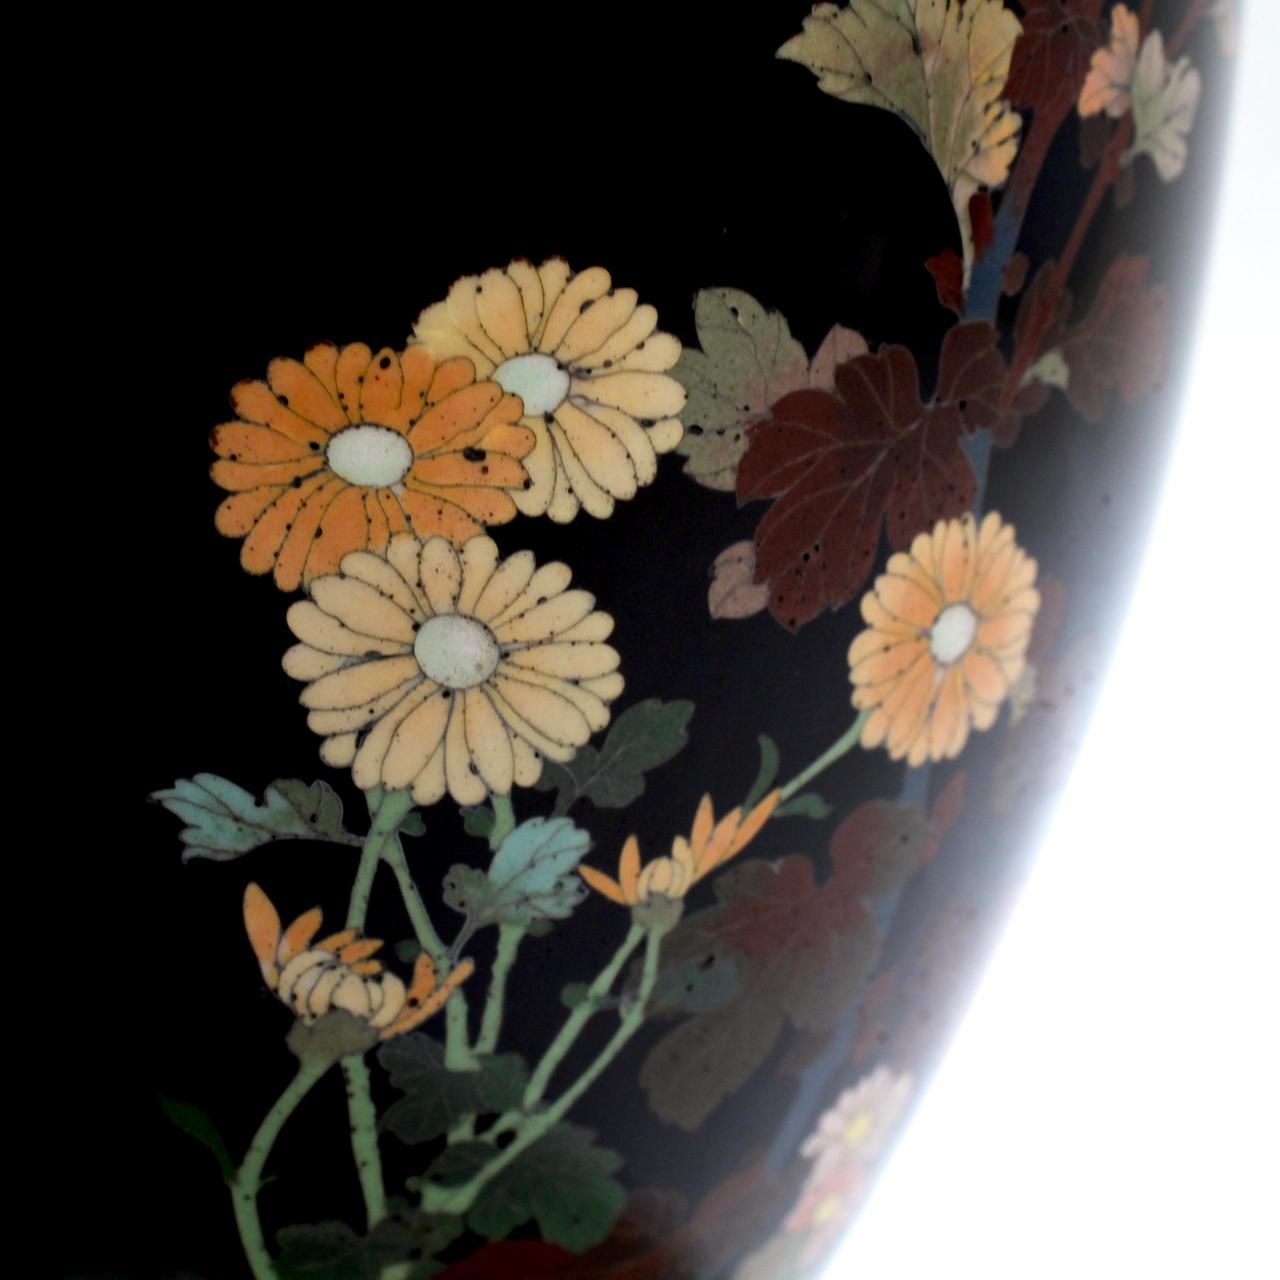 Antique Meiji Japanese Cloisonné Black Enamel Vase with Flowers and Butterflies 9